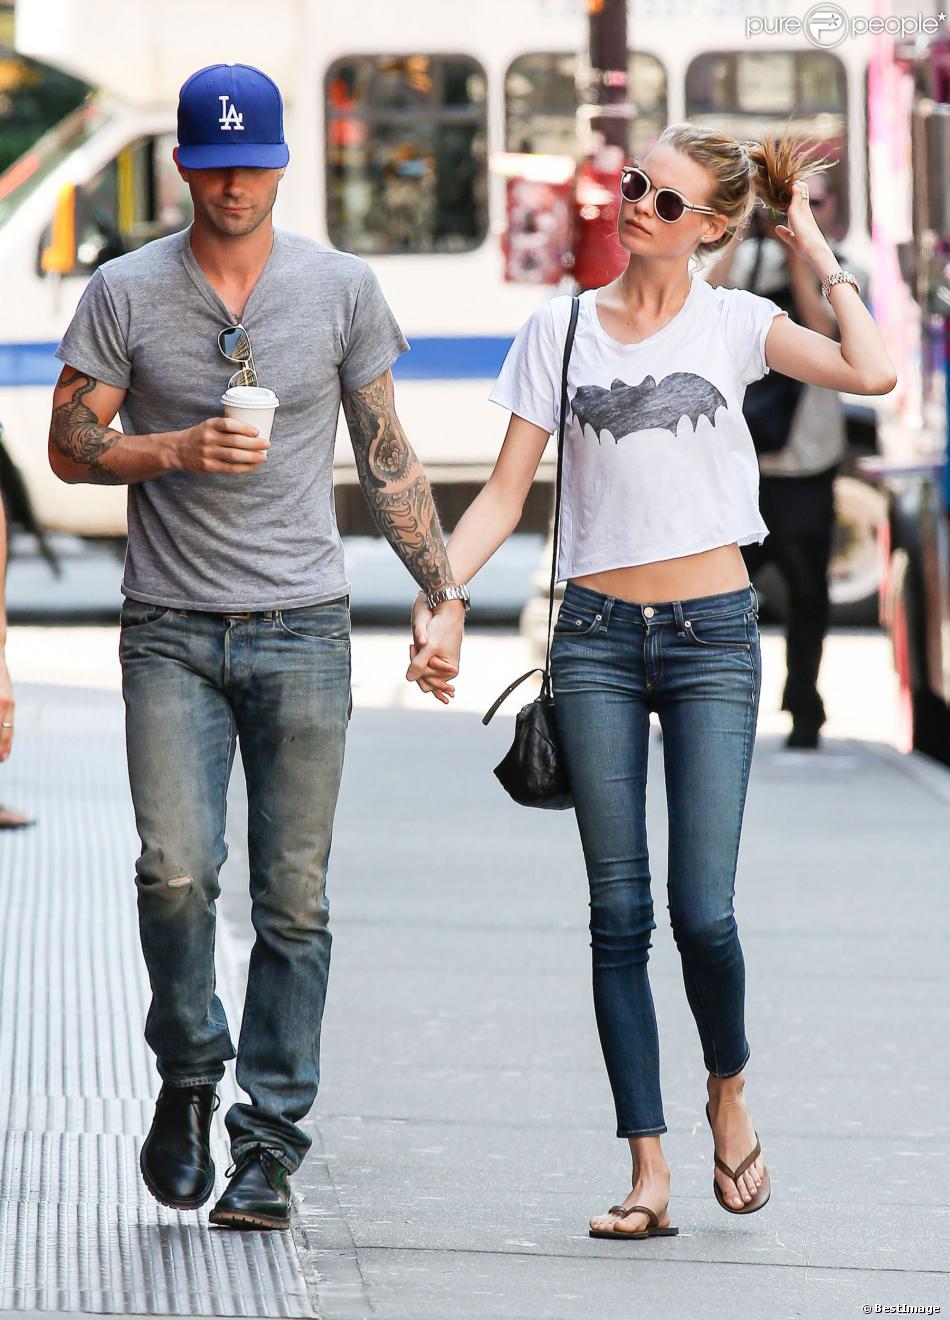 Adam Levine et sa fiancée Behati Prinsloo se promènent à New York, le 29 juillet 2013.